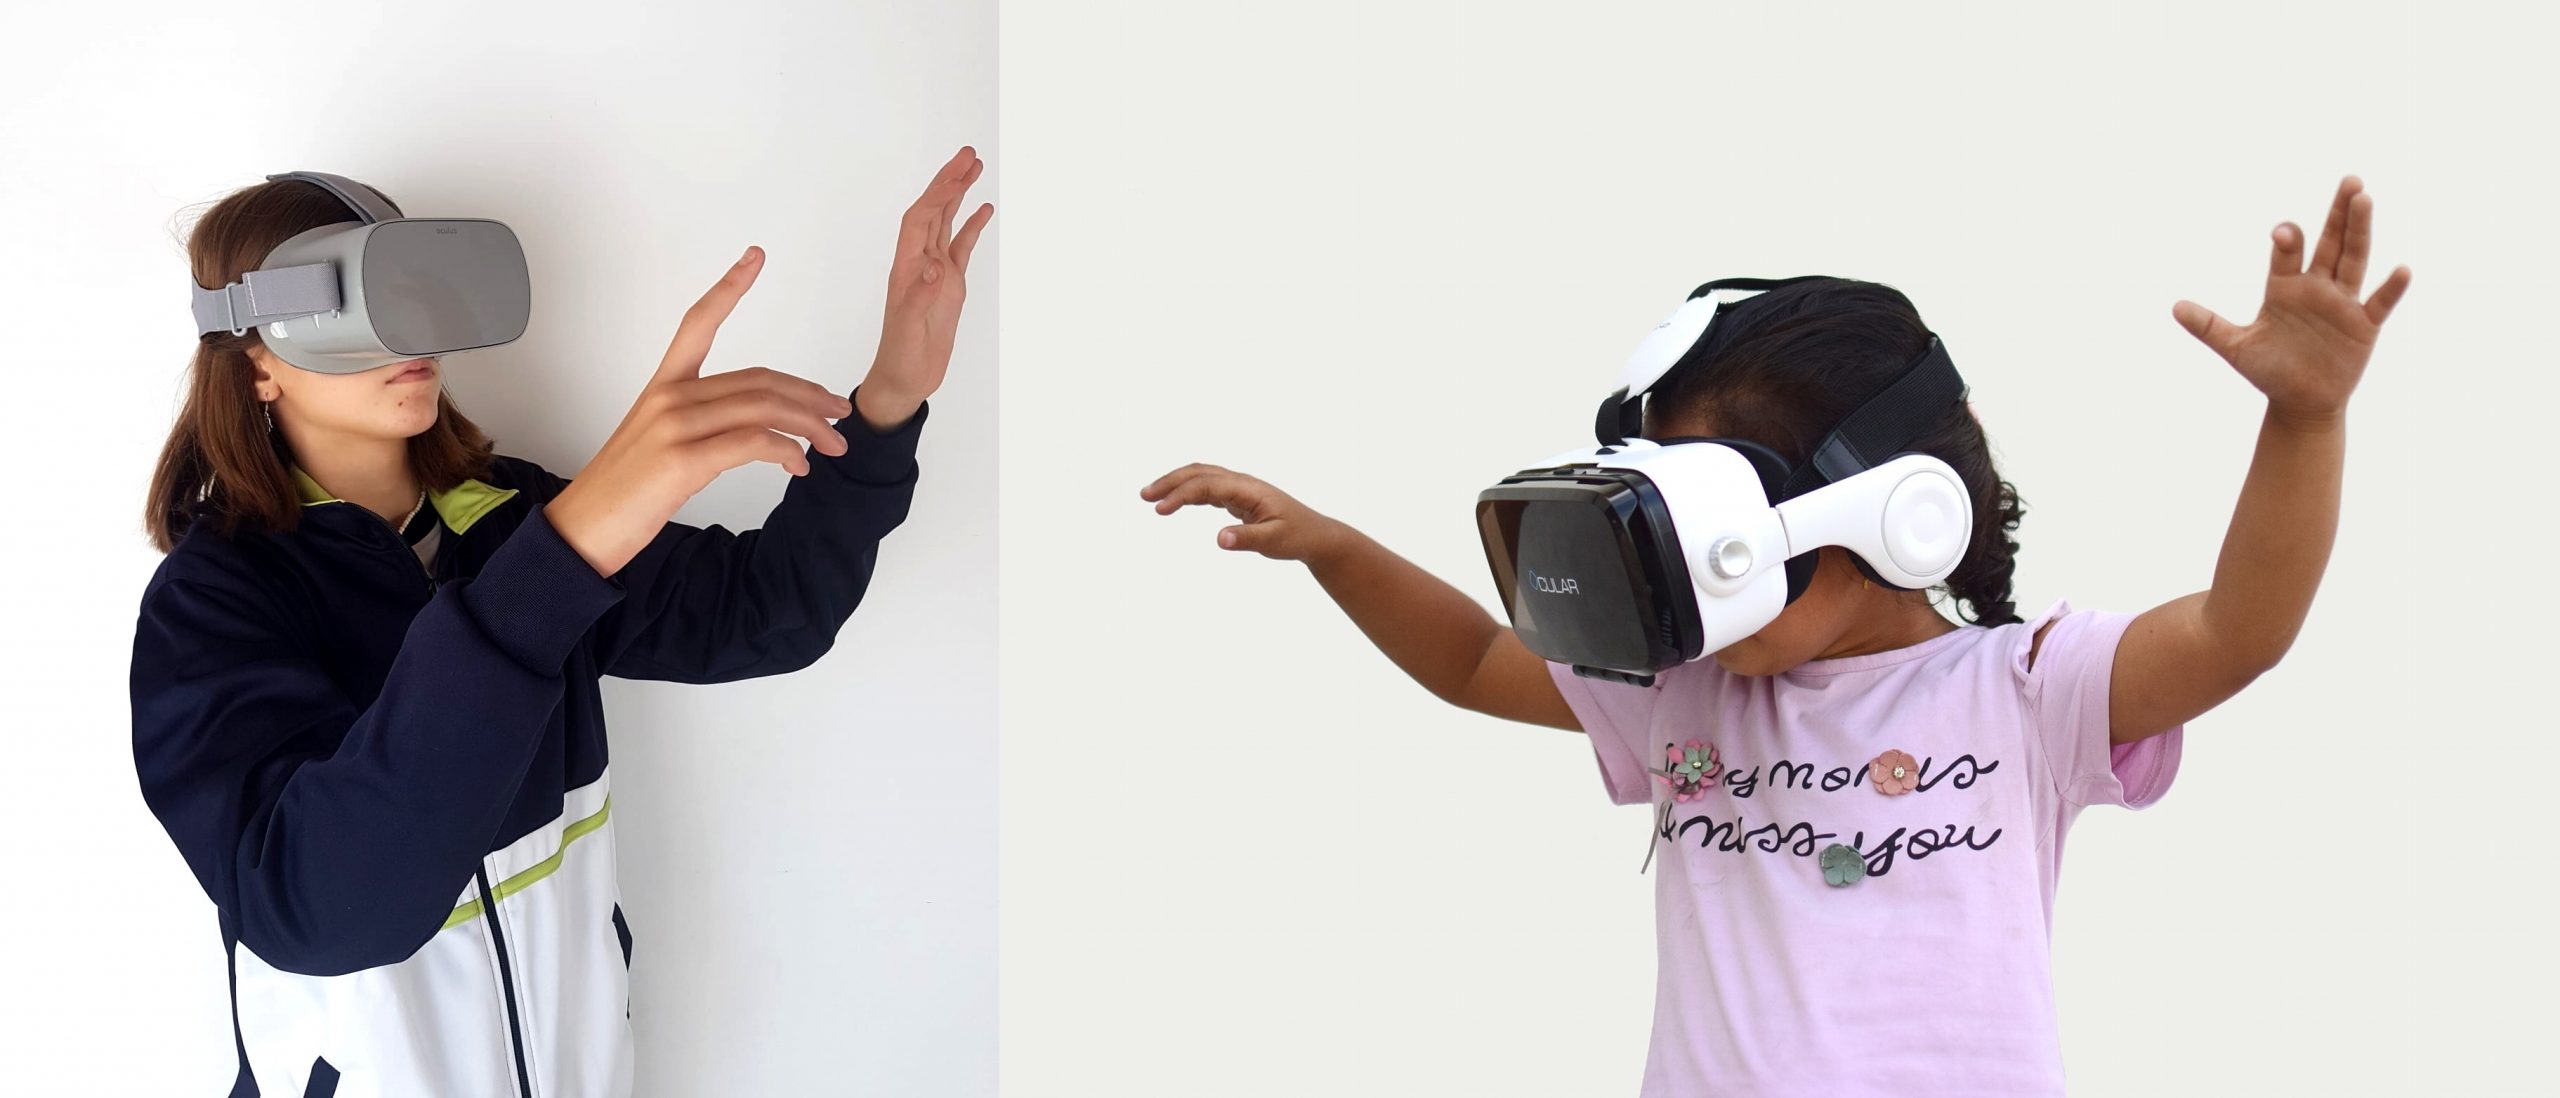 realidad virtual mujer gigante